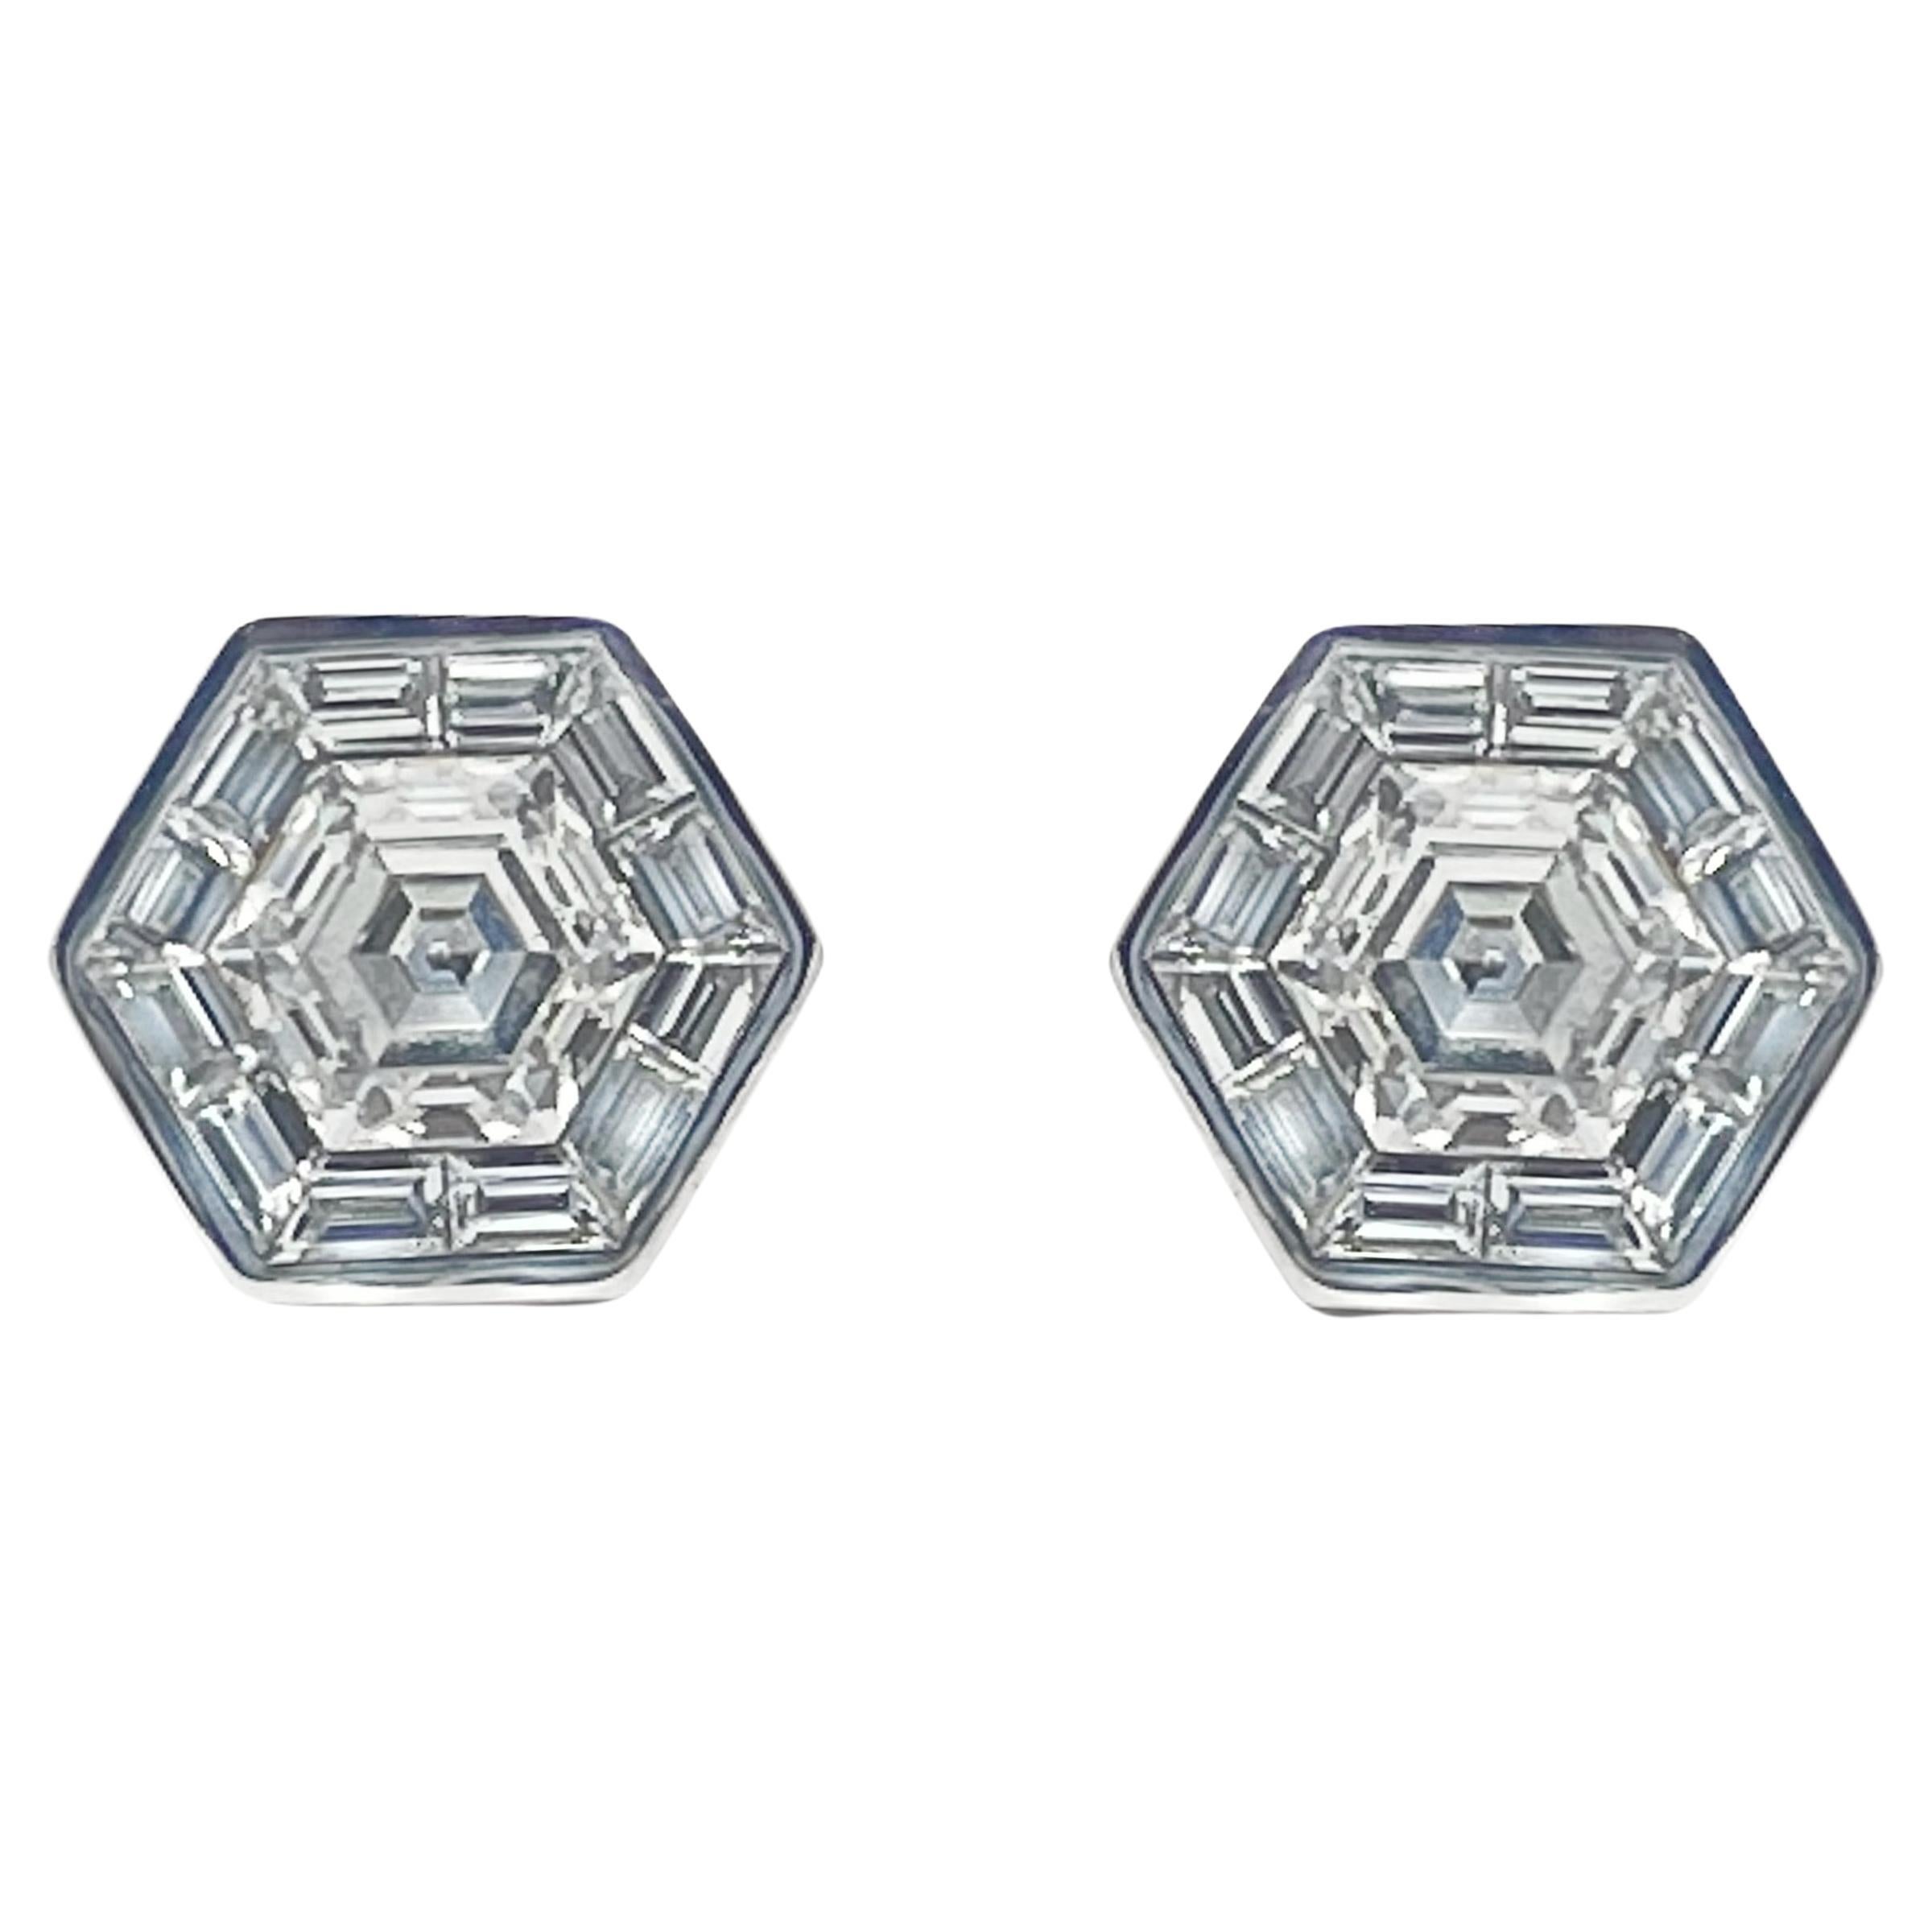 Hexagonal Diamond Mosaic 18k White Gold Stud Earrings For Sale